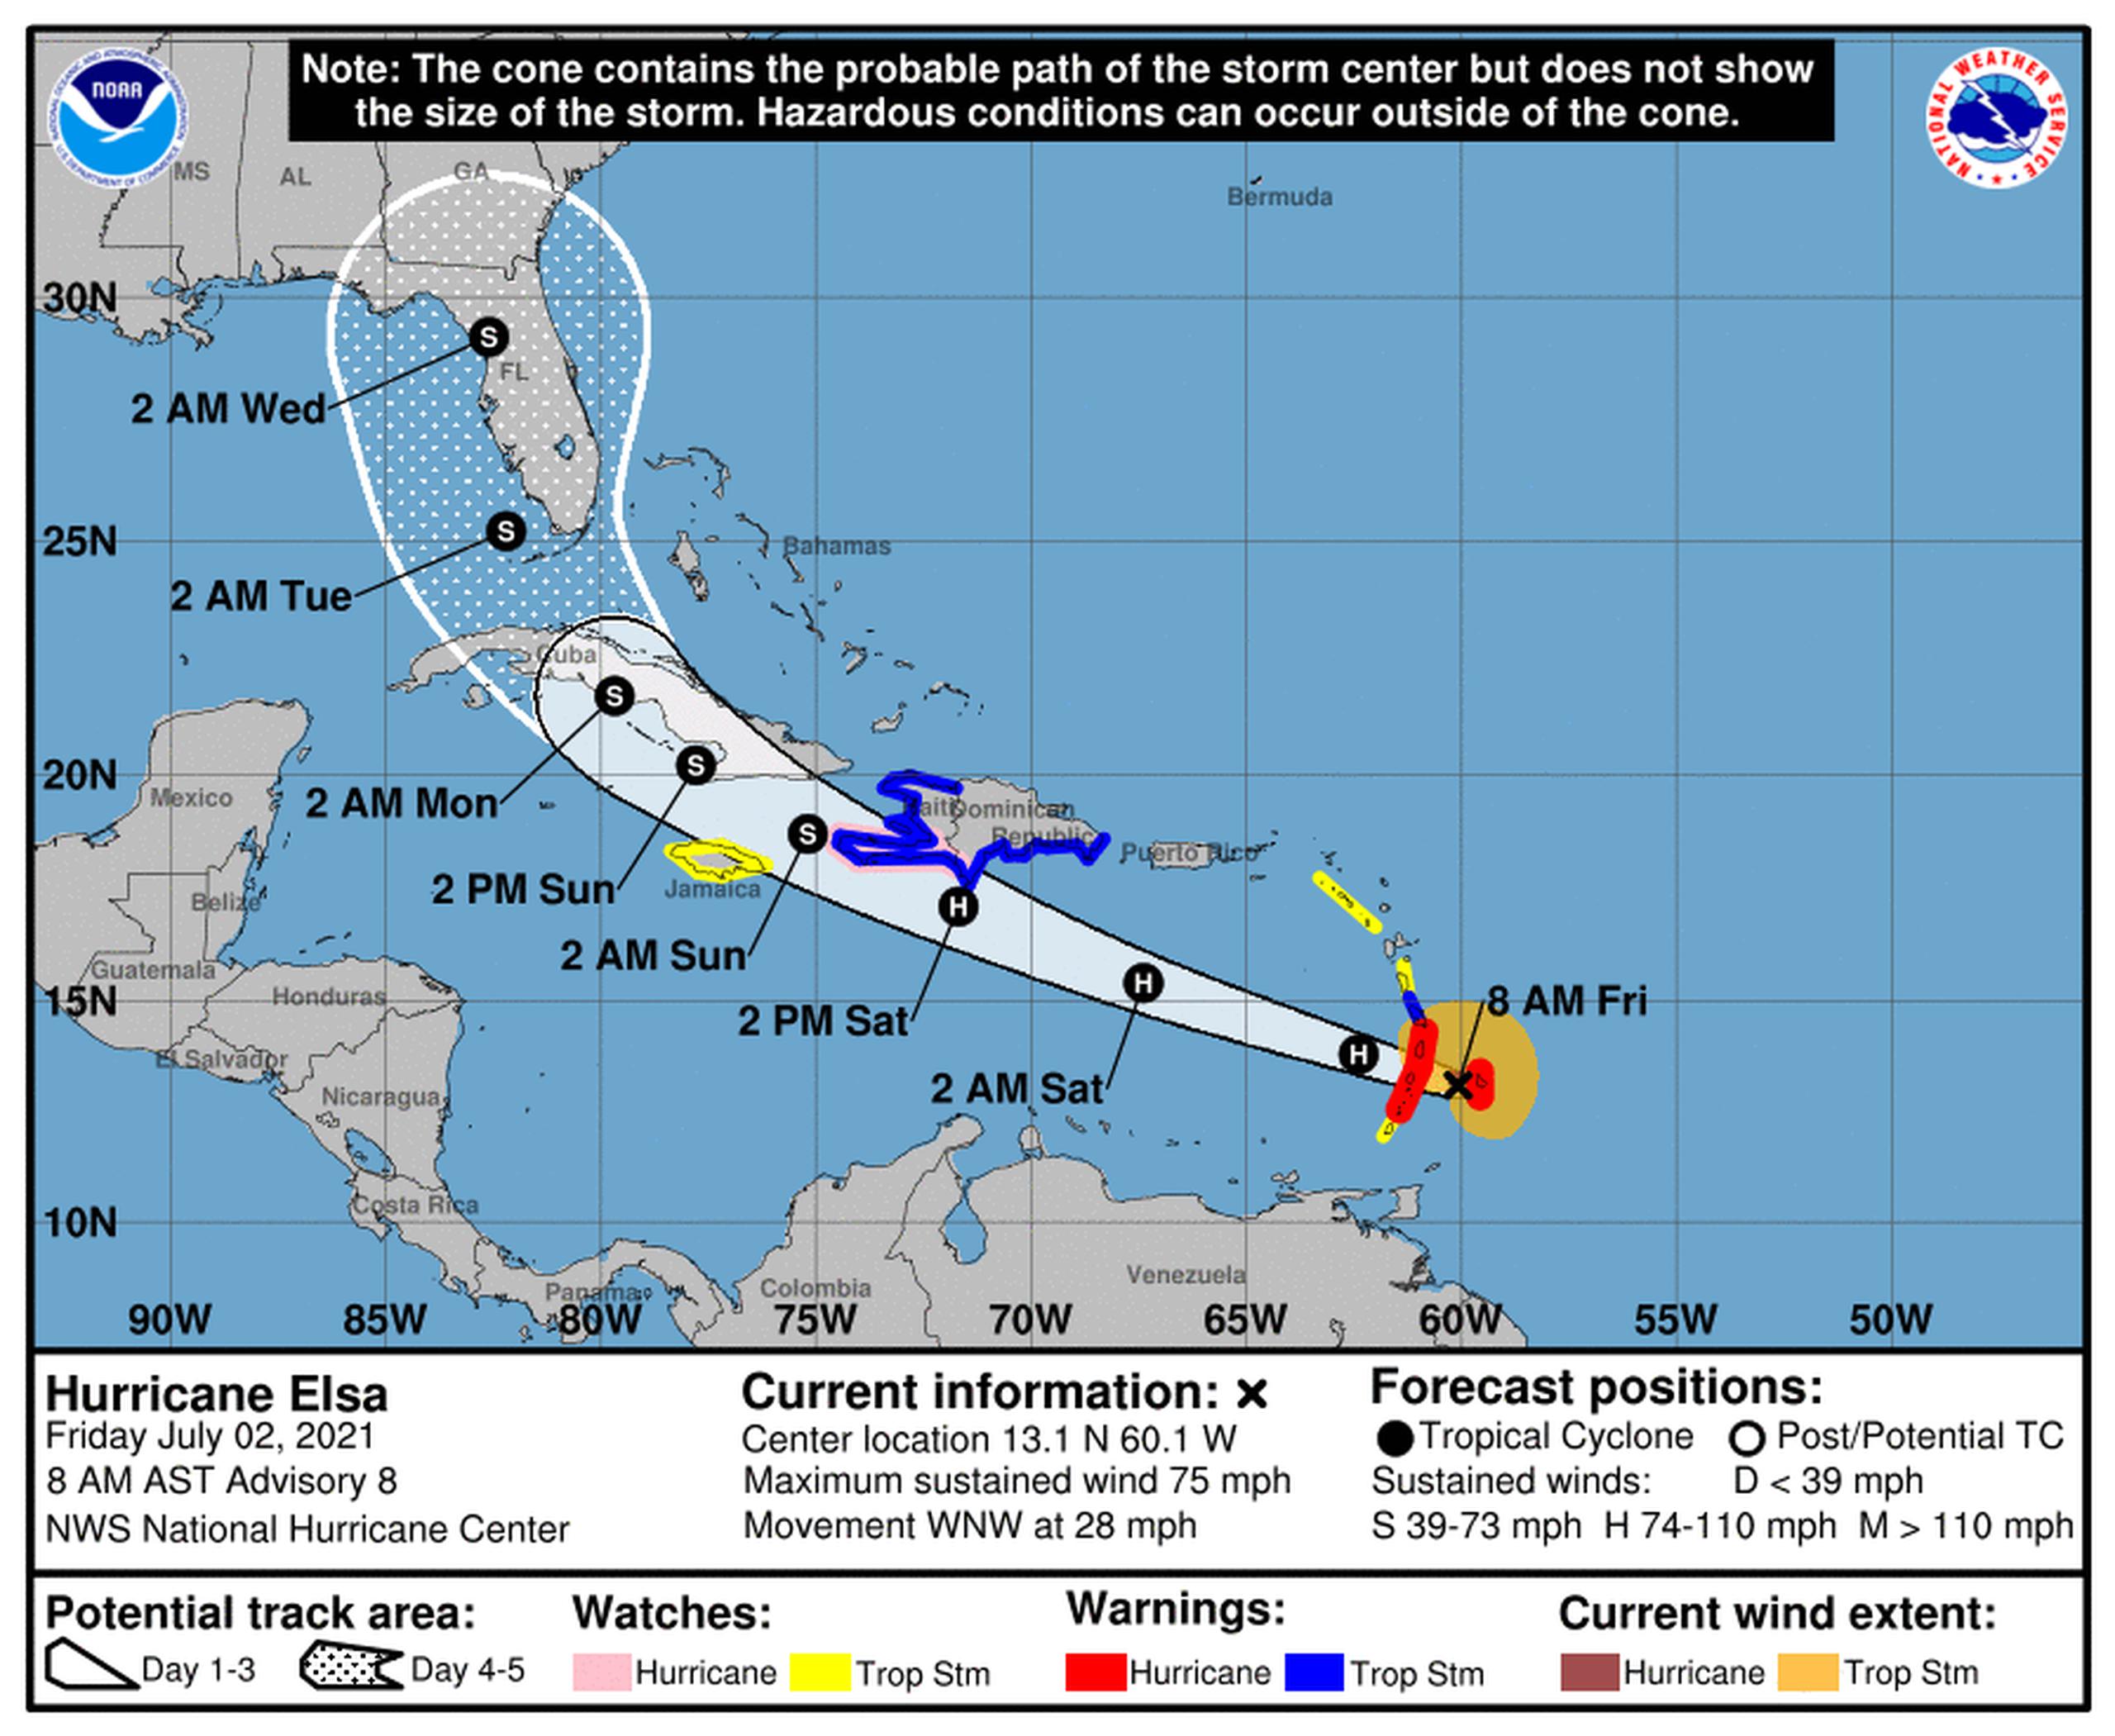 Pronóstico del huracán Elsa emitido a las 8:00 de la mañana por el Centro Nacional de Huracanes el 2 de julio de 2021.